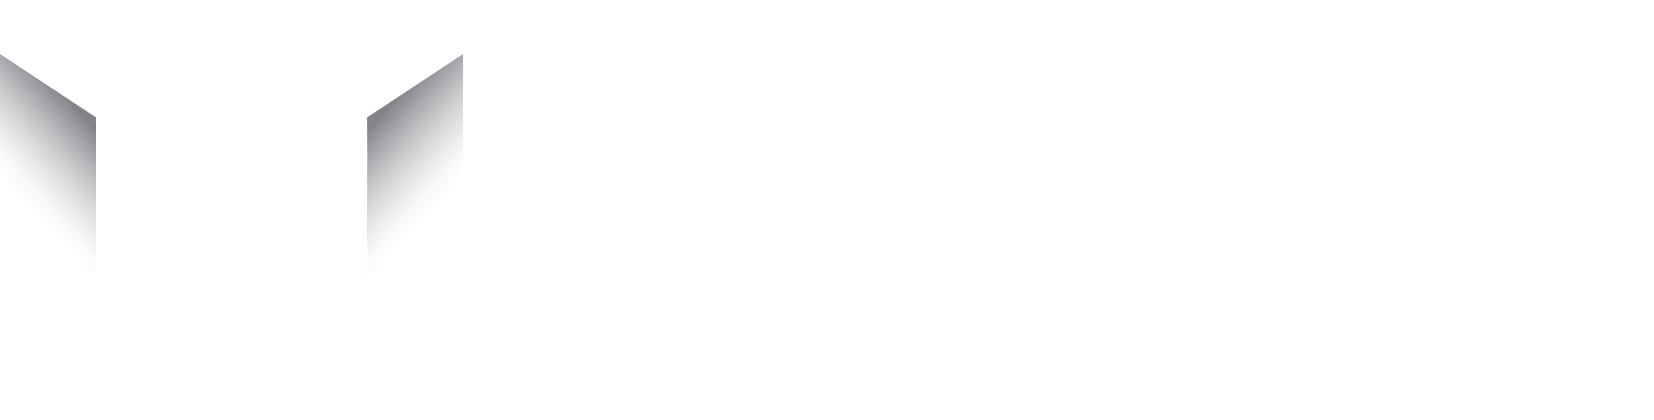 Milieu Service Nederland logo